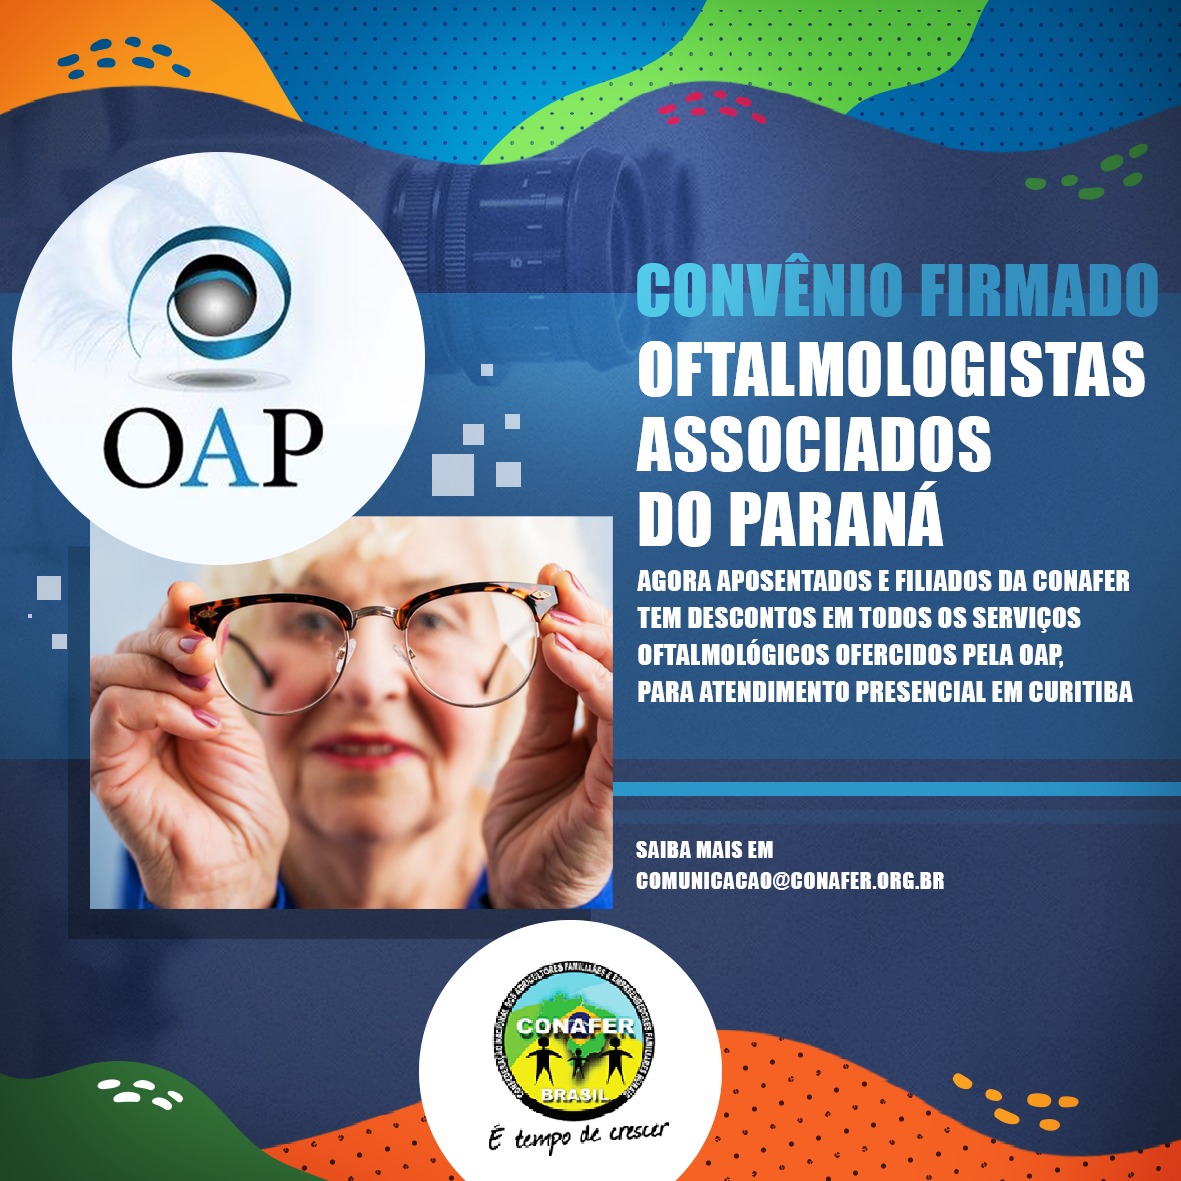 Por mais benefícios aos aposentados, CONAFER fecha parceria com oftalmologistas associados do Paraná